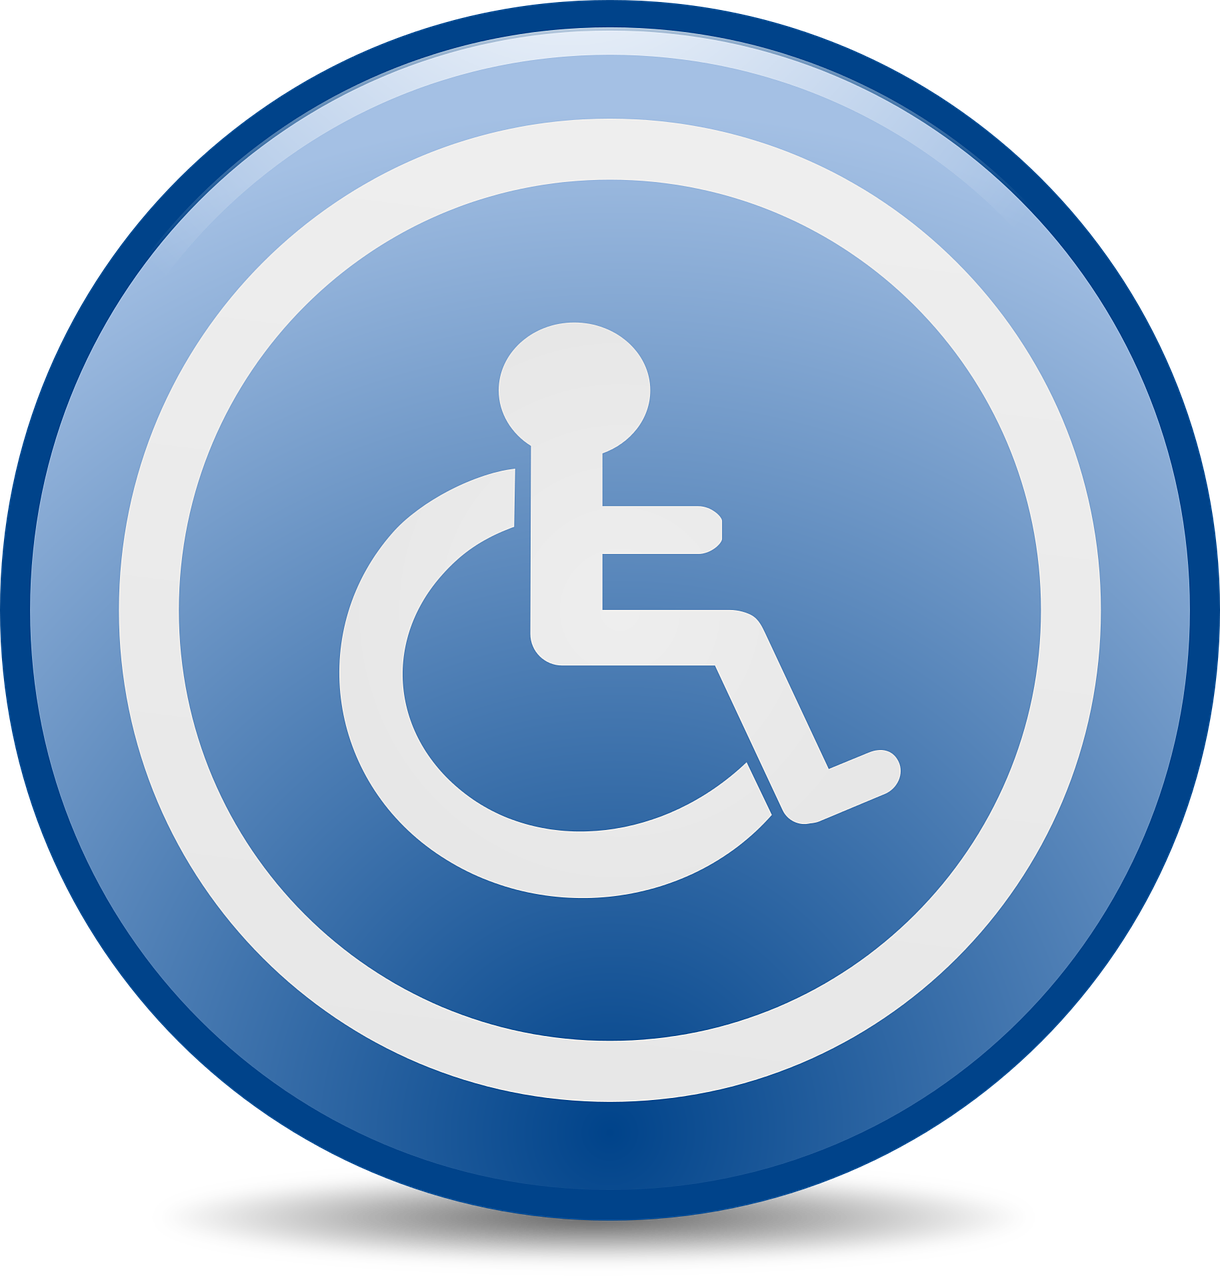 Год доступной информации. Доступность. Инвалидная коляска знак. Доступность картинка. Доступность информации значок.